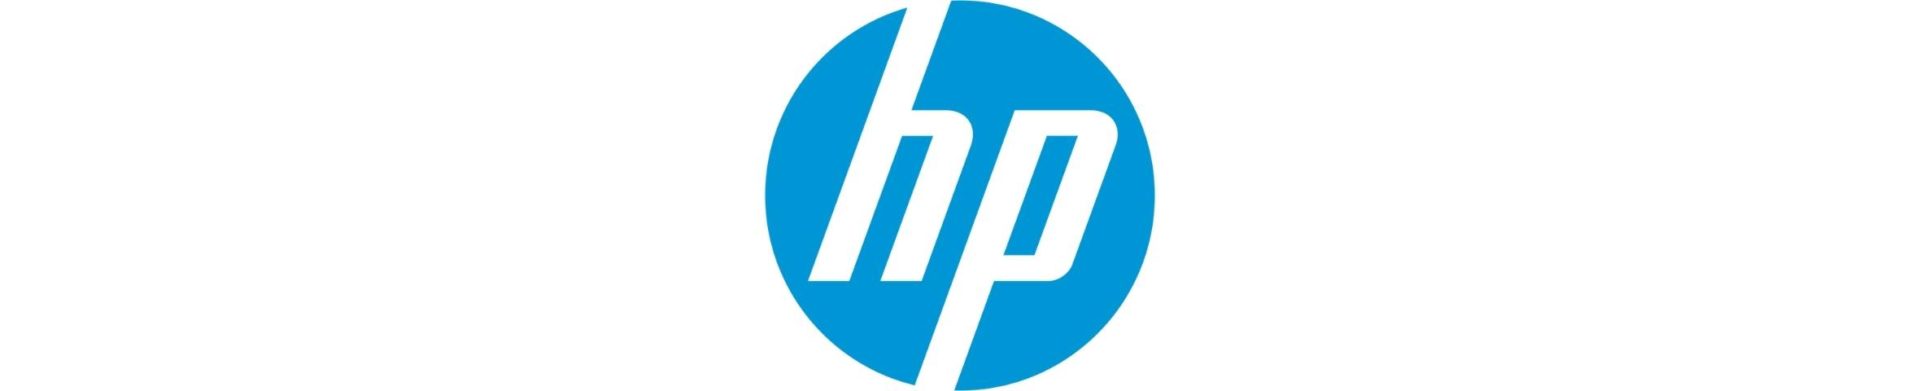 the HP logo